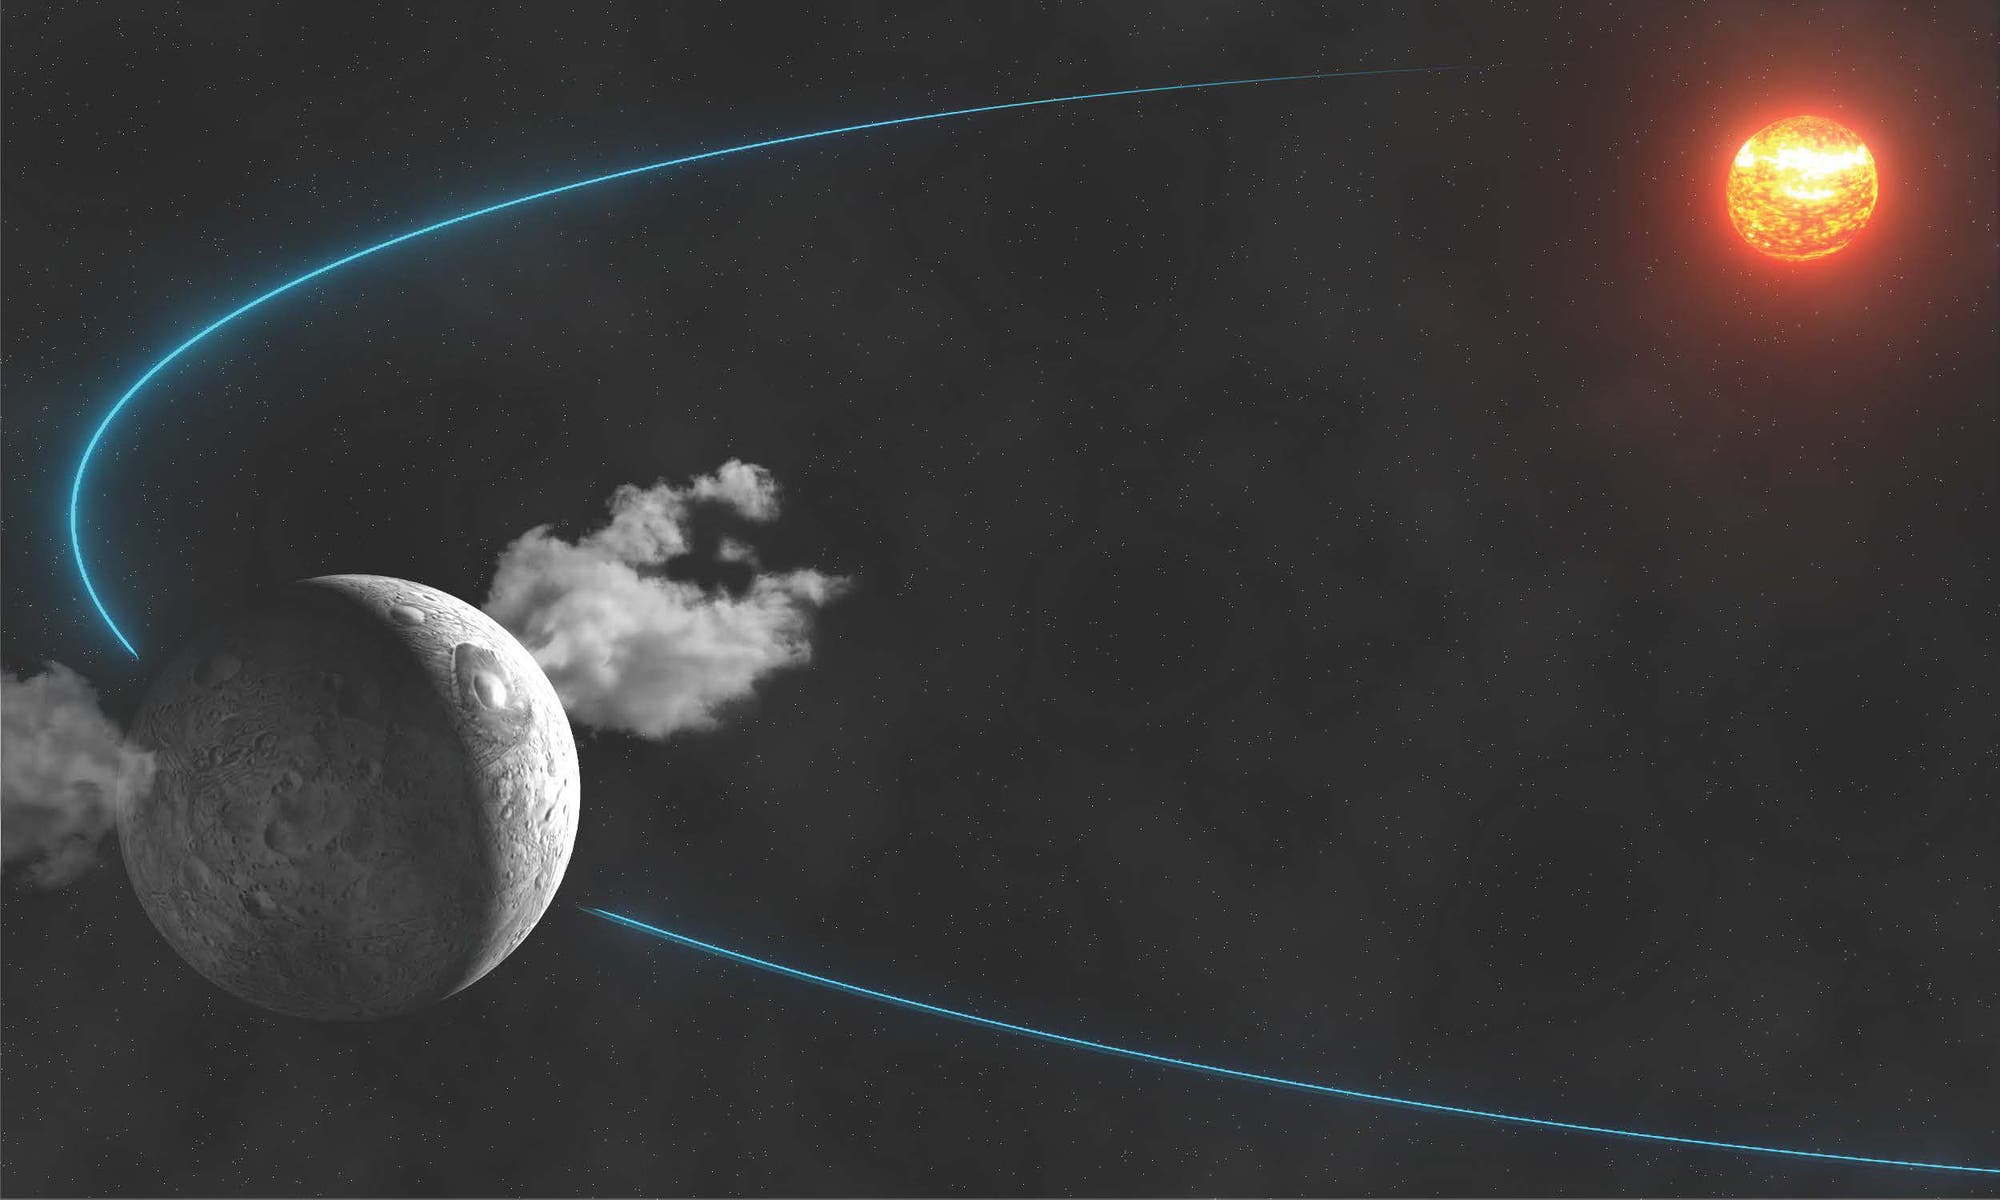 Zwergplanet Ceres stößt Wasserdampf aus (künstlerische Darstellung)